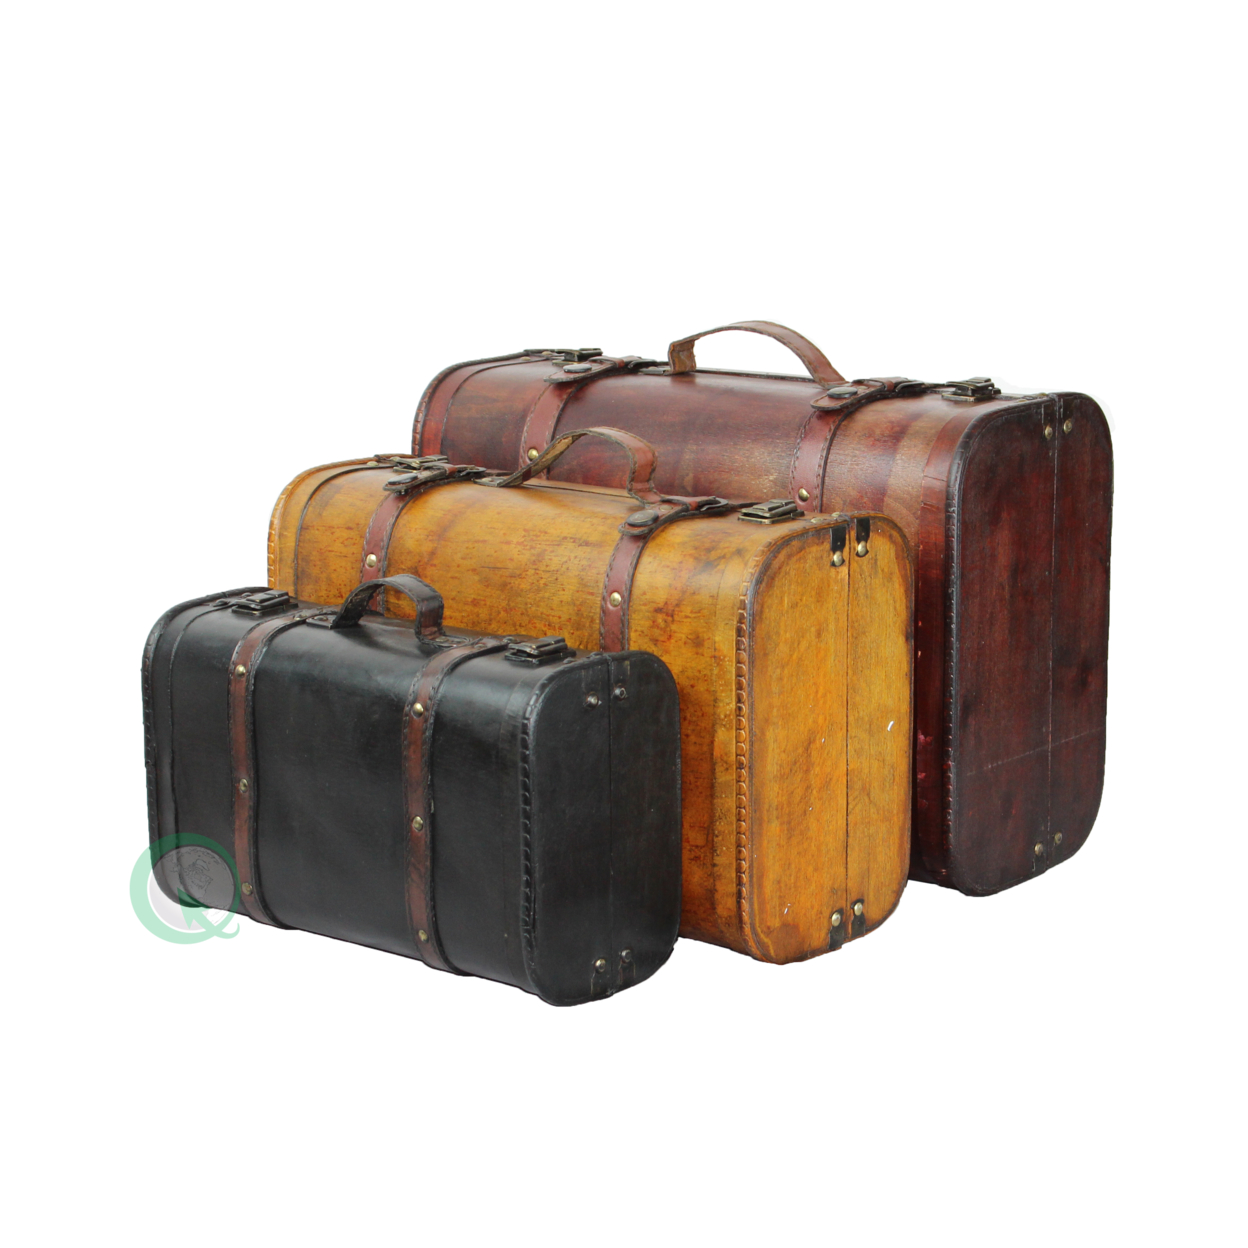 Vintage Style Luggage Suitcase Trunk - Set Of 2